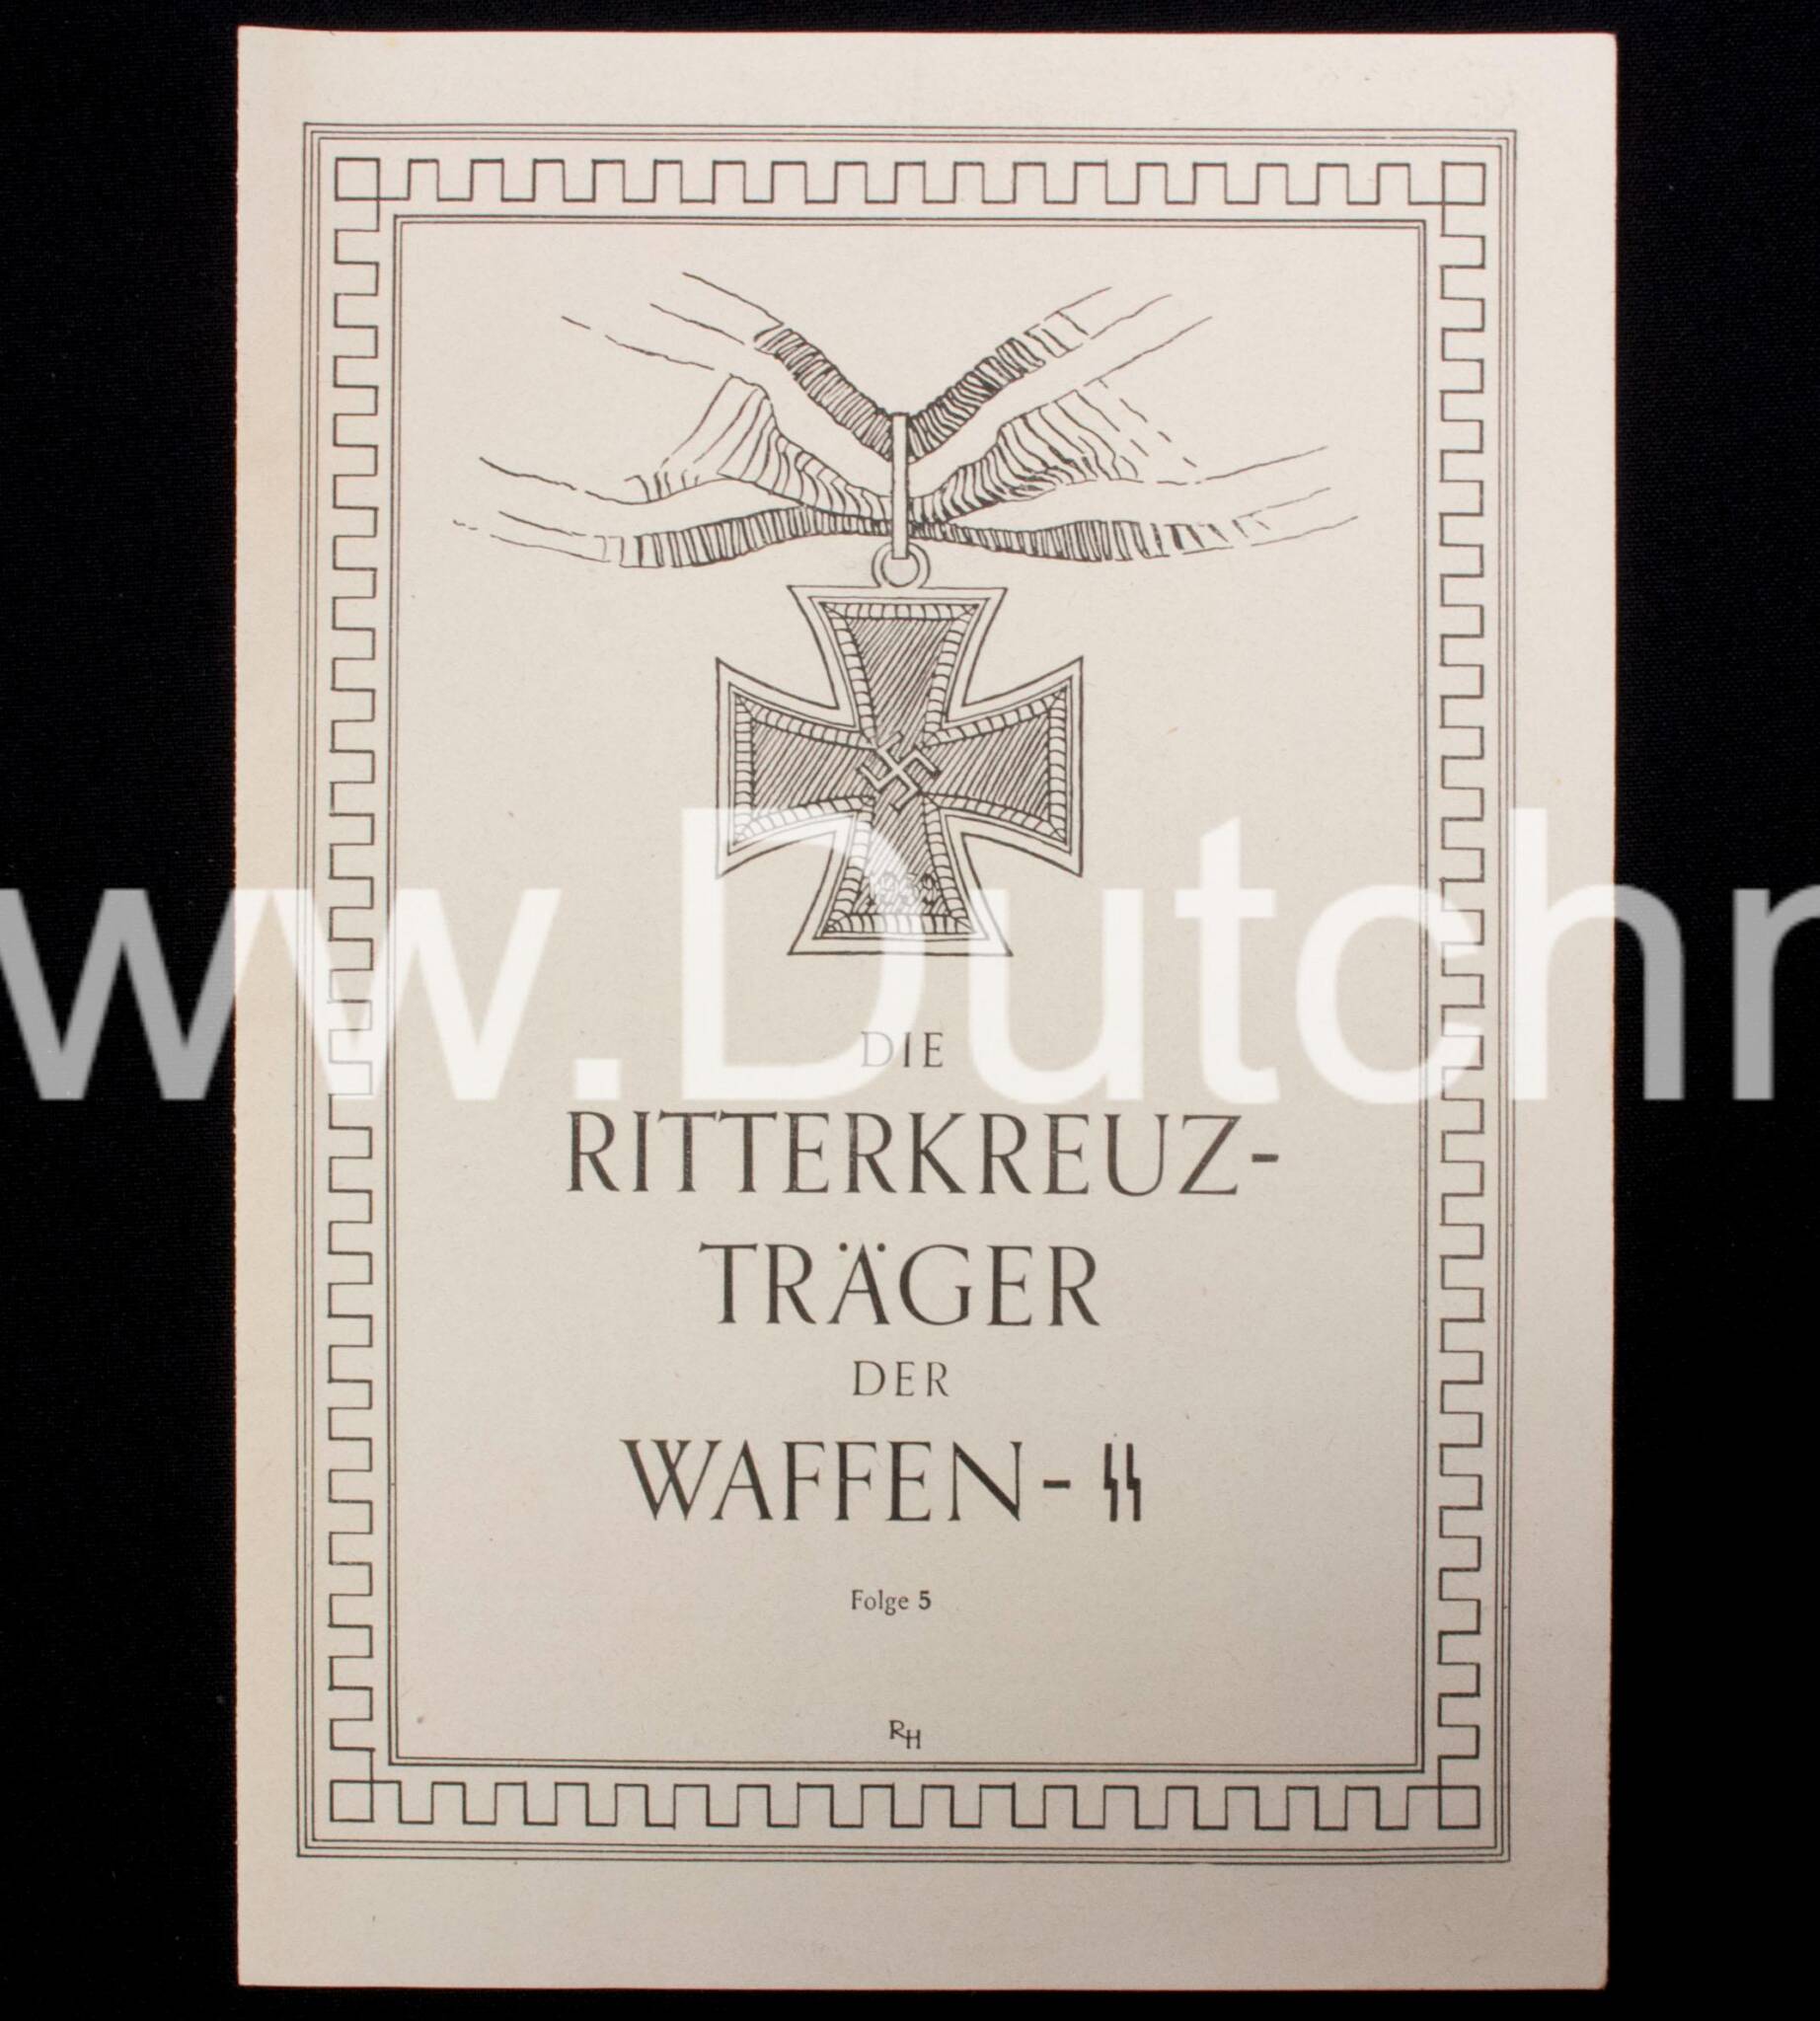 (Postcard) Das SChwarze Korps - Die Schutzstaffeln der NSDAP sammlen Baustein für die Errichting eines SS-Mütterheimes - VERY RARE